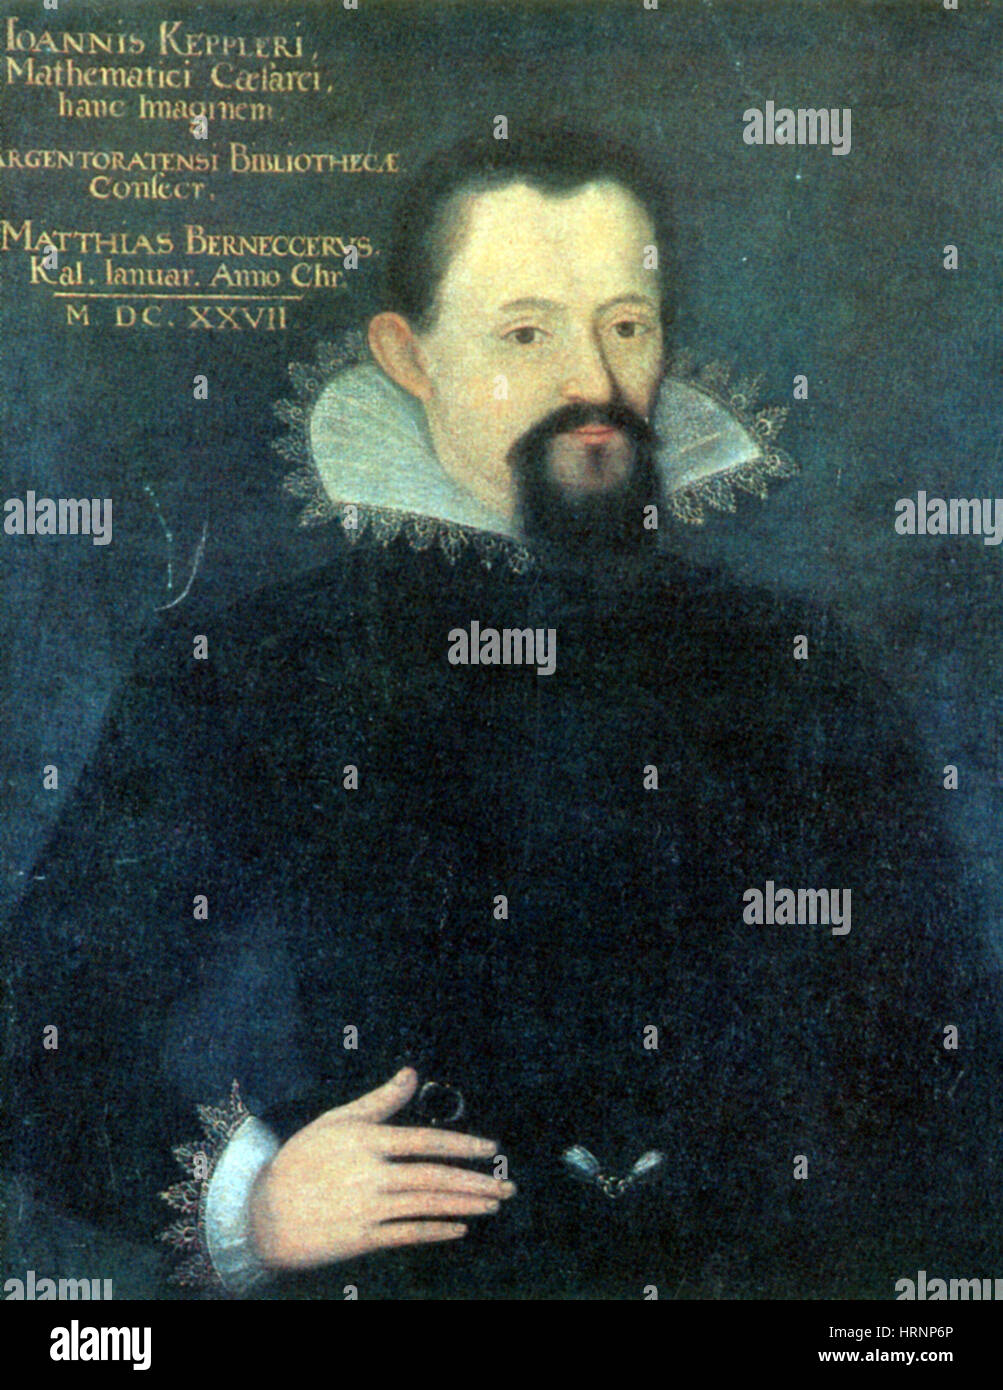 Johannes Kepler, astronome et mathématicien allemand Banque D'Images